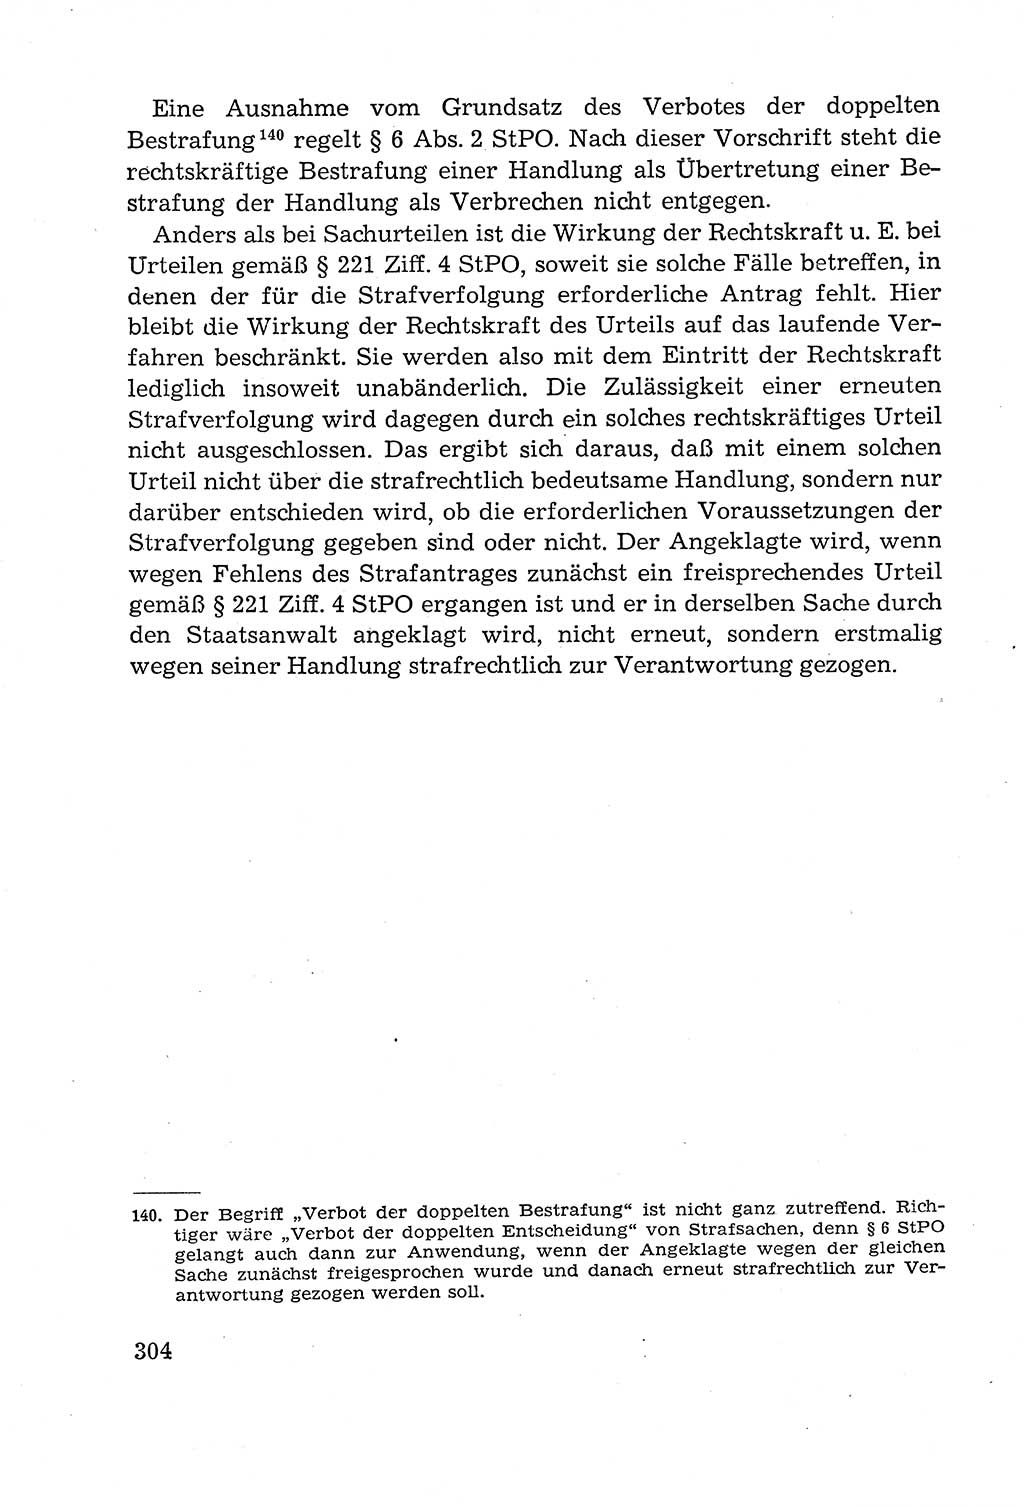 Leitfaden des Strafprozeßrechts der Deutschen Demokratischen Republik (DDR) 1959, Seite 304 (LF StPR DDR 1959, S. 304)